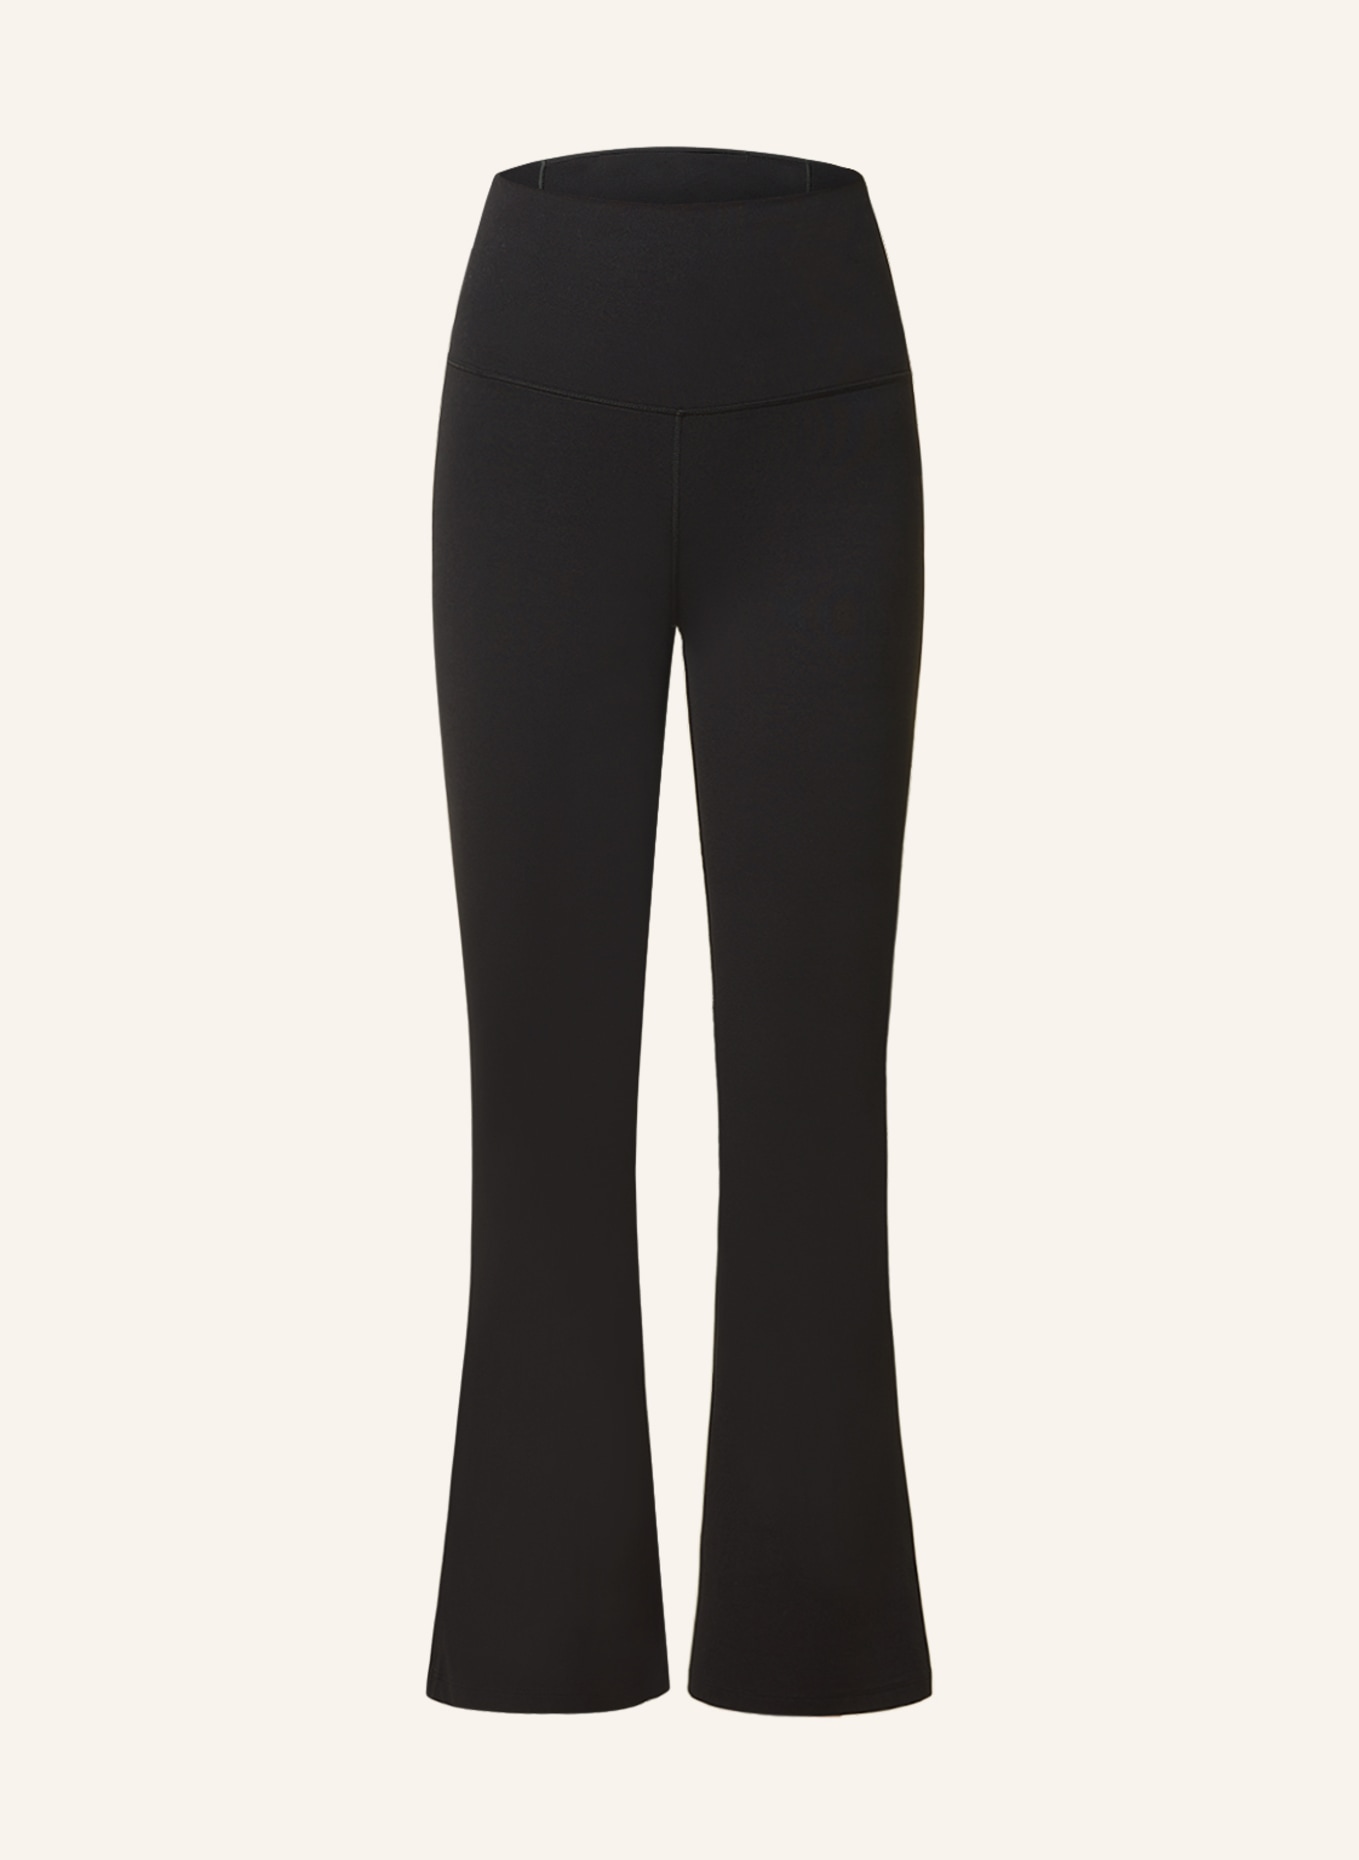 Nike Yoga Dri-FIT Luxe Pants - Black/Multi